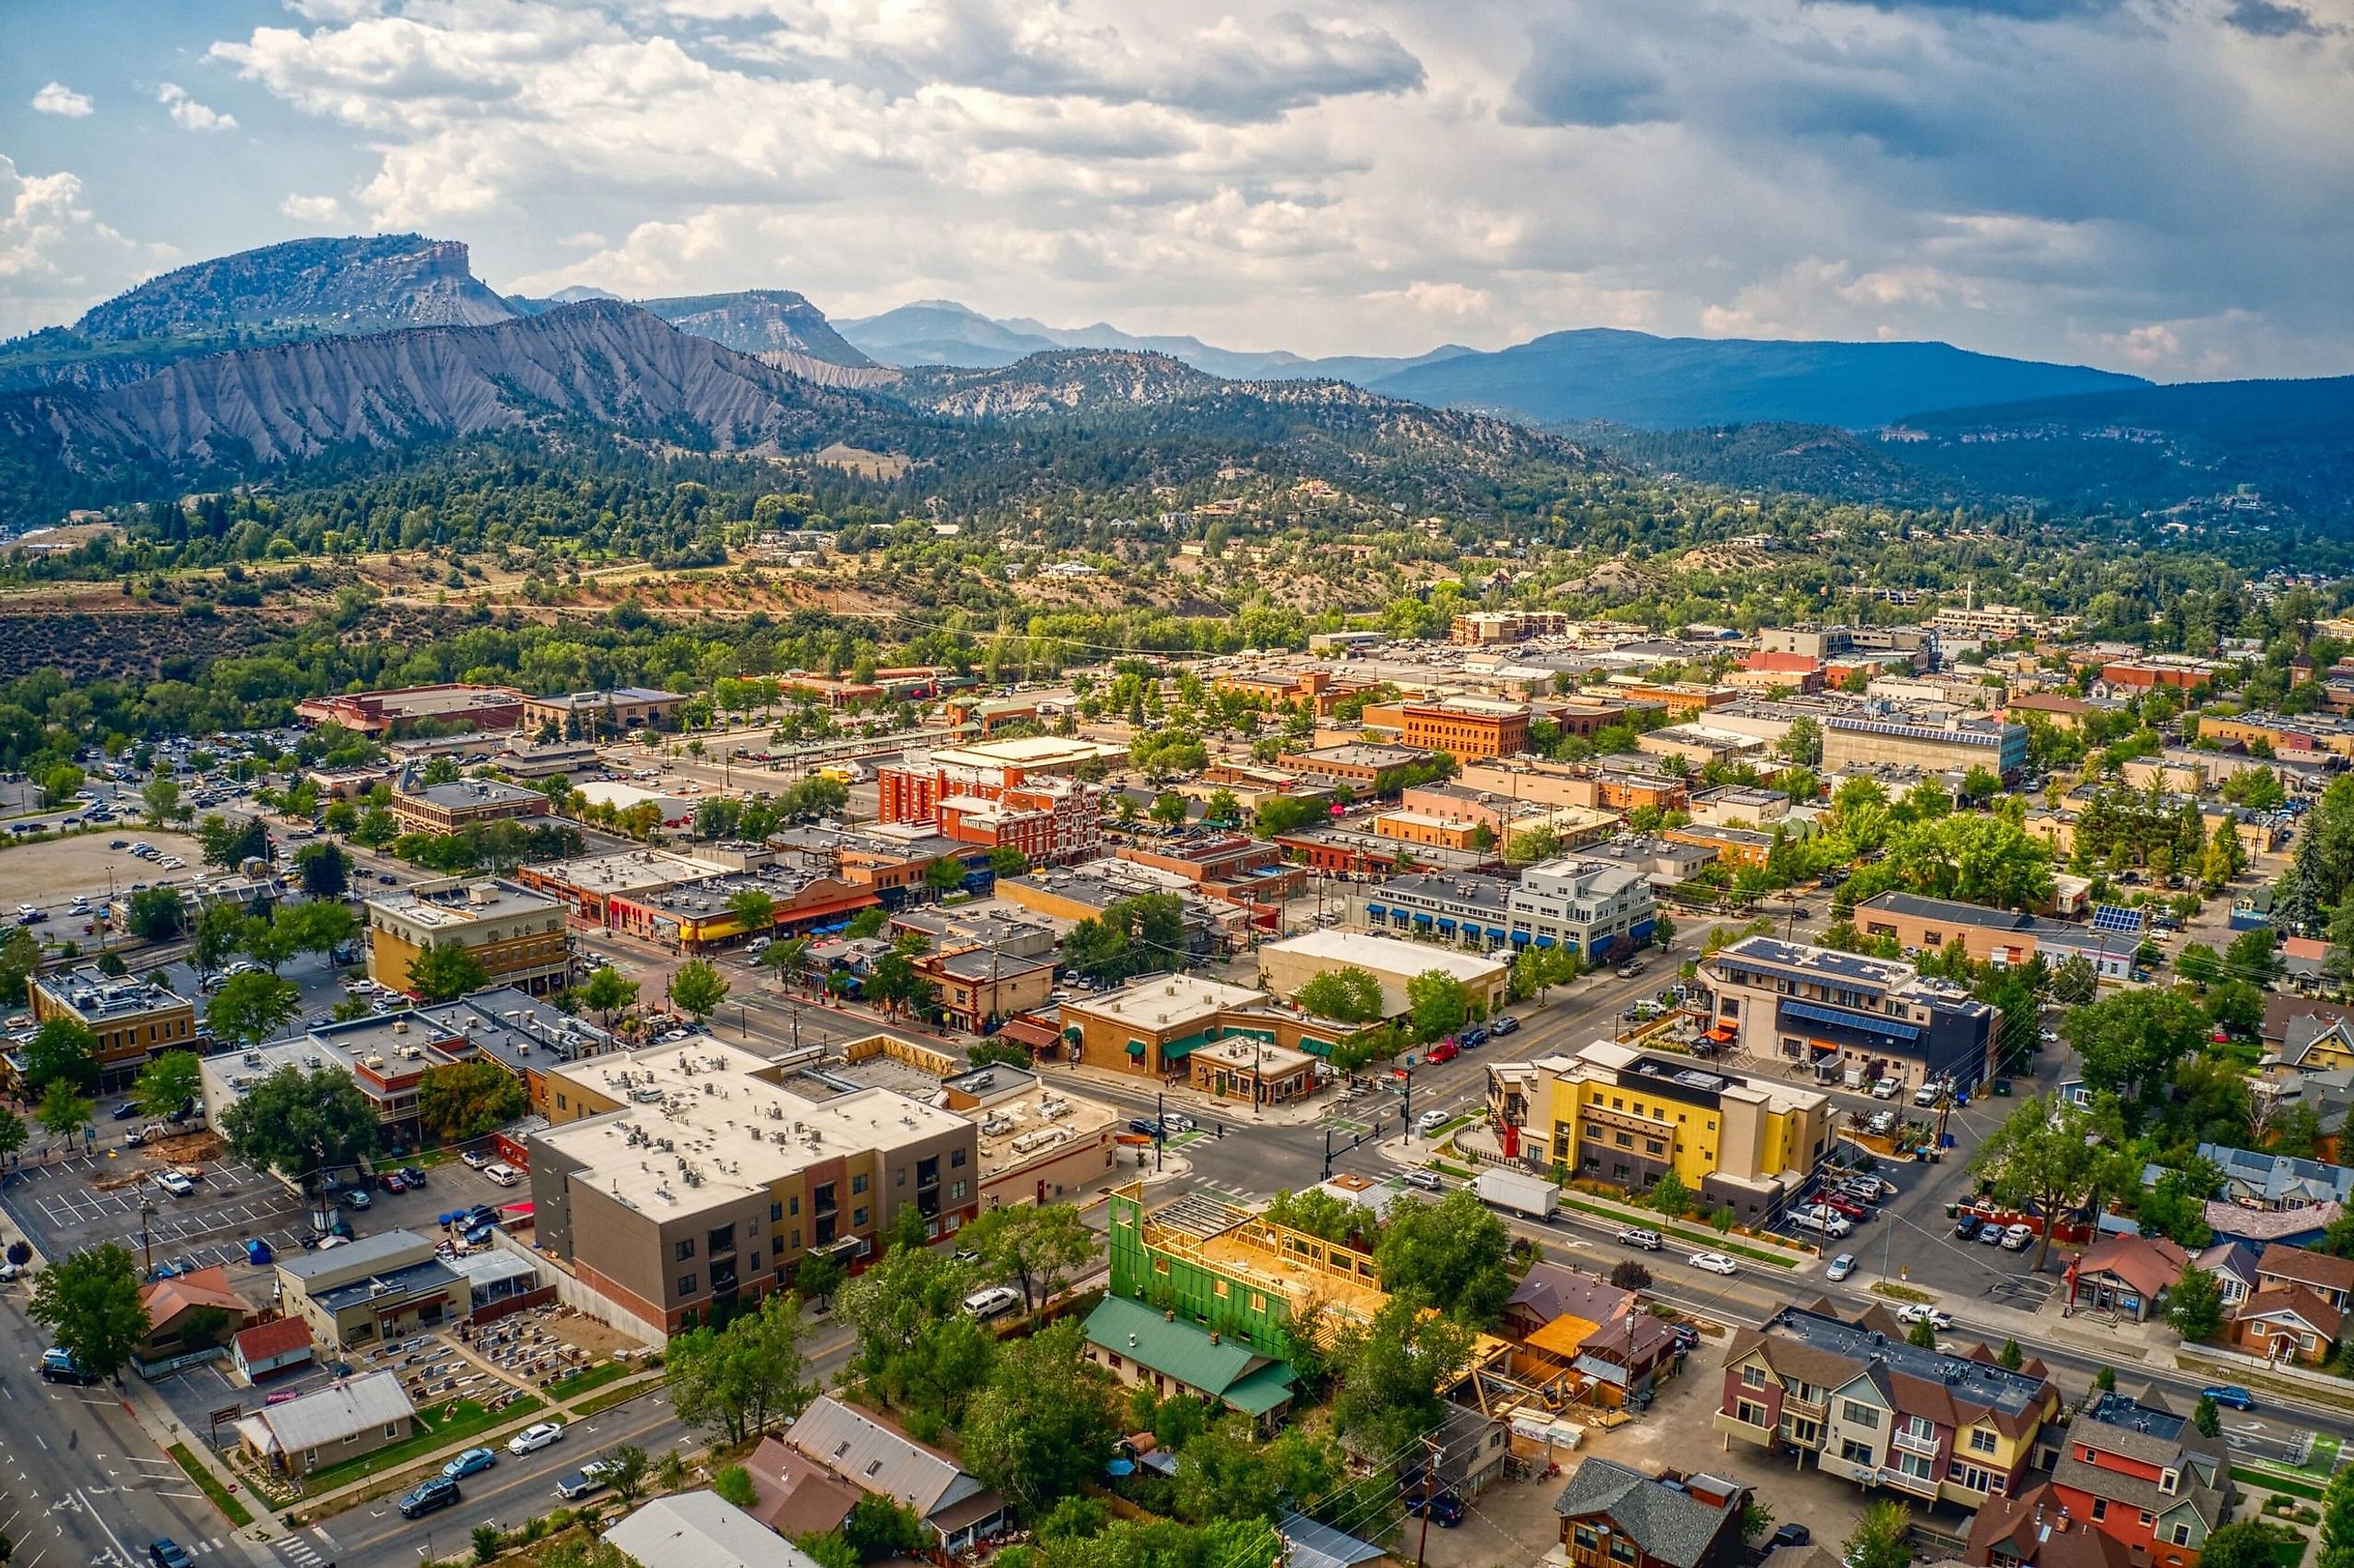 Aerial View of Durango, Colorado in Summer